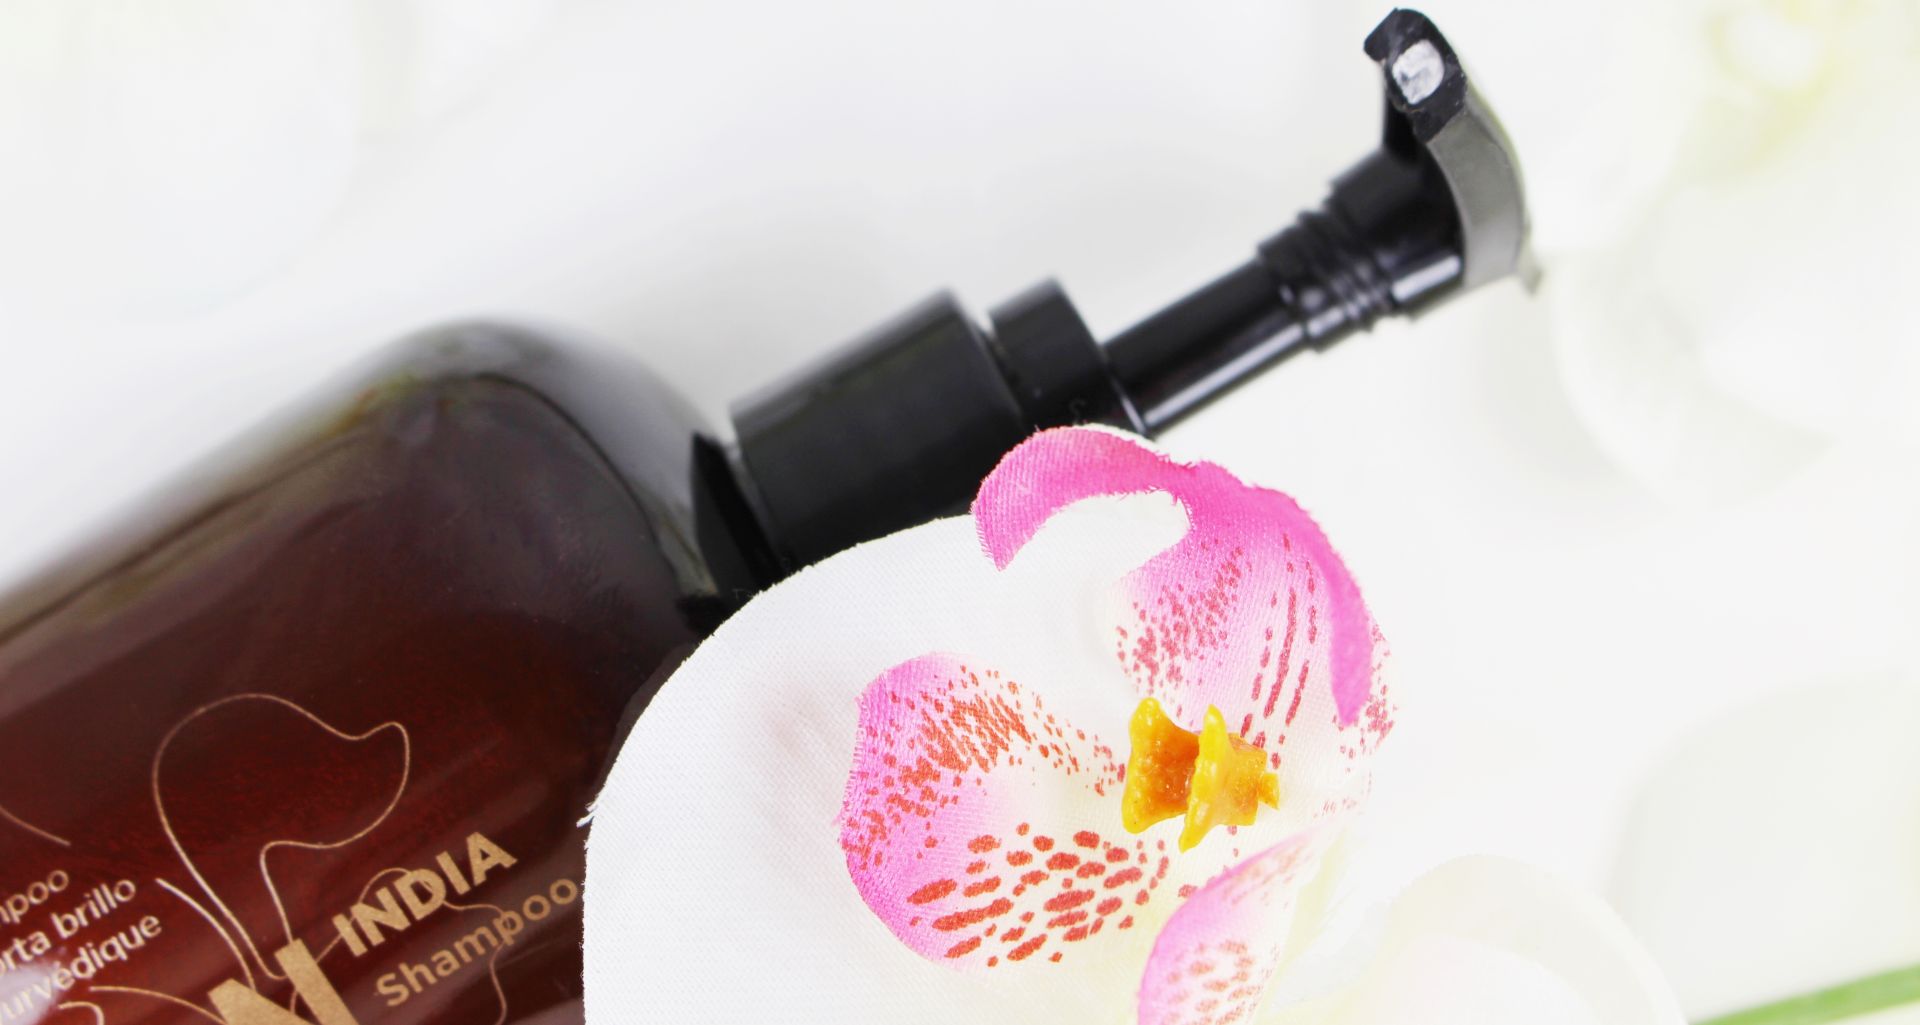 ICON India Shampoo Review, ICON India Oil, ICON India Shampoo Ingredients, ICON India Shampoo Inhaltsstoffe, Haarpflege Silikone